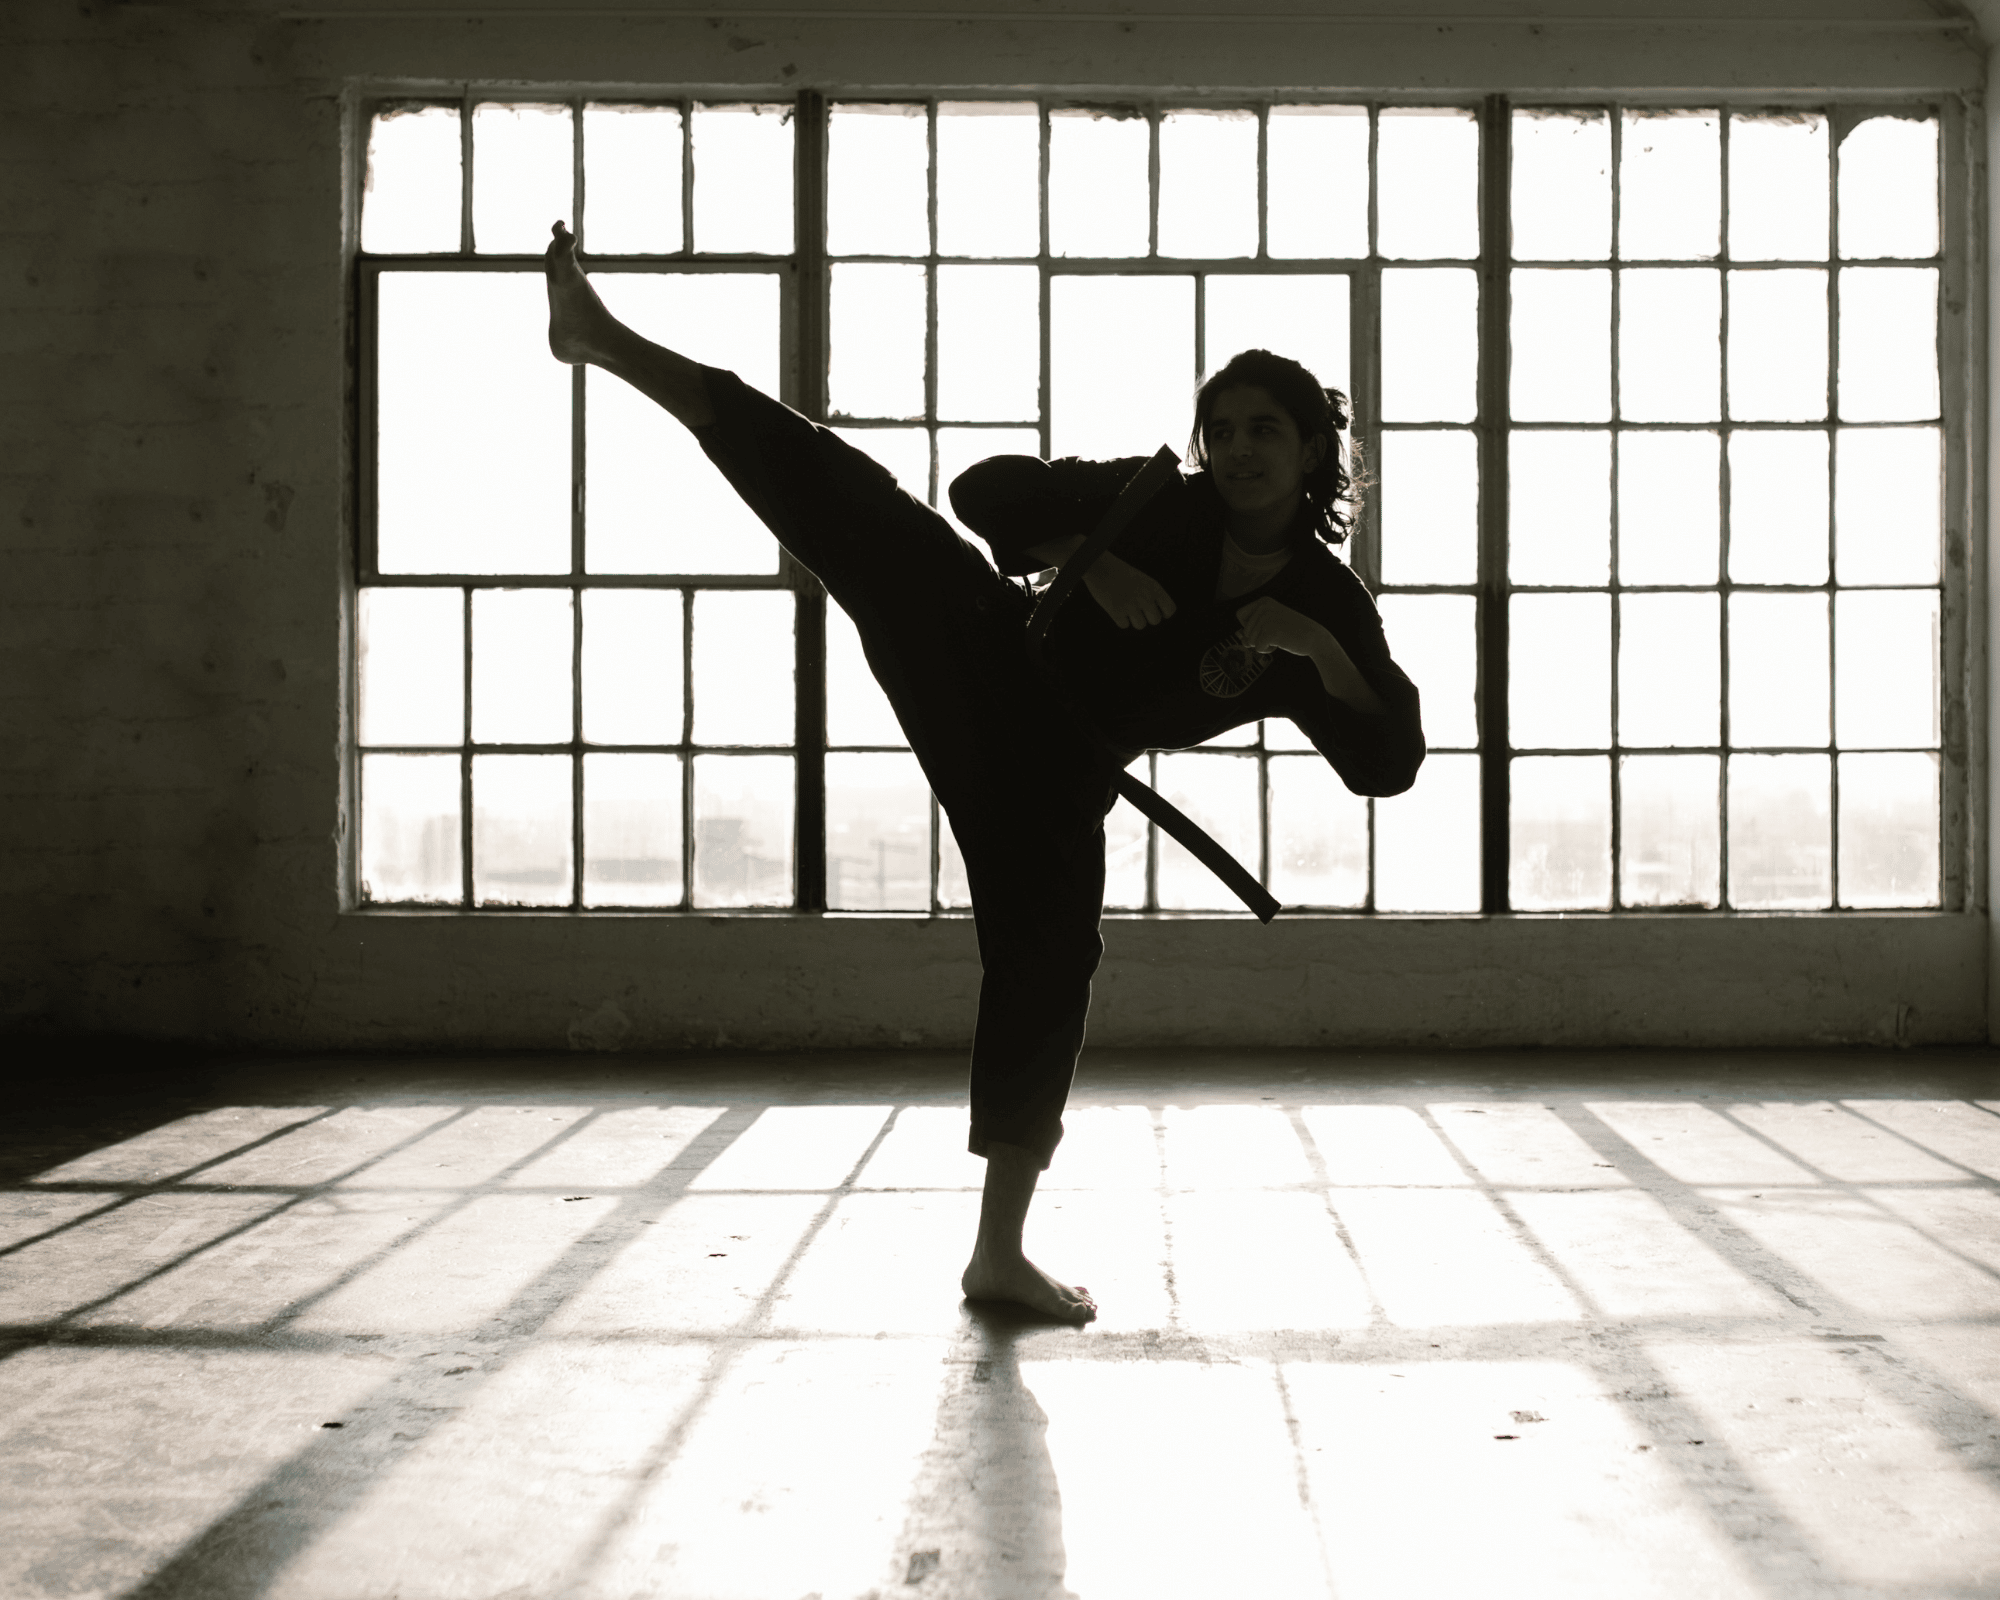 Silhouette de femme en train de lever sa jambe comme dans un combat d'art martial, on la voit dans une salle vide devant des fenêtre du style des salles de sports d'arts martiaux